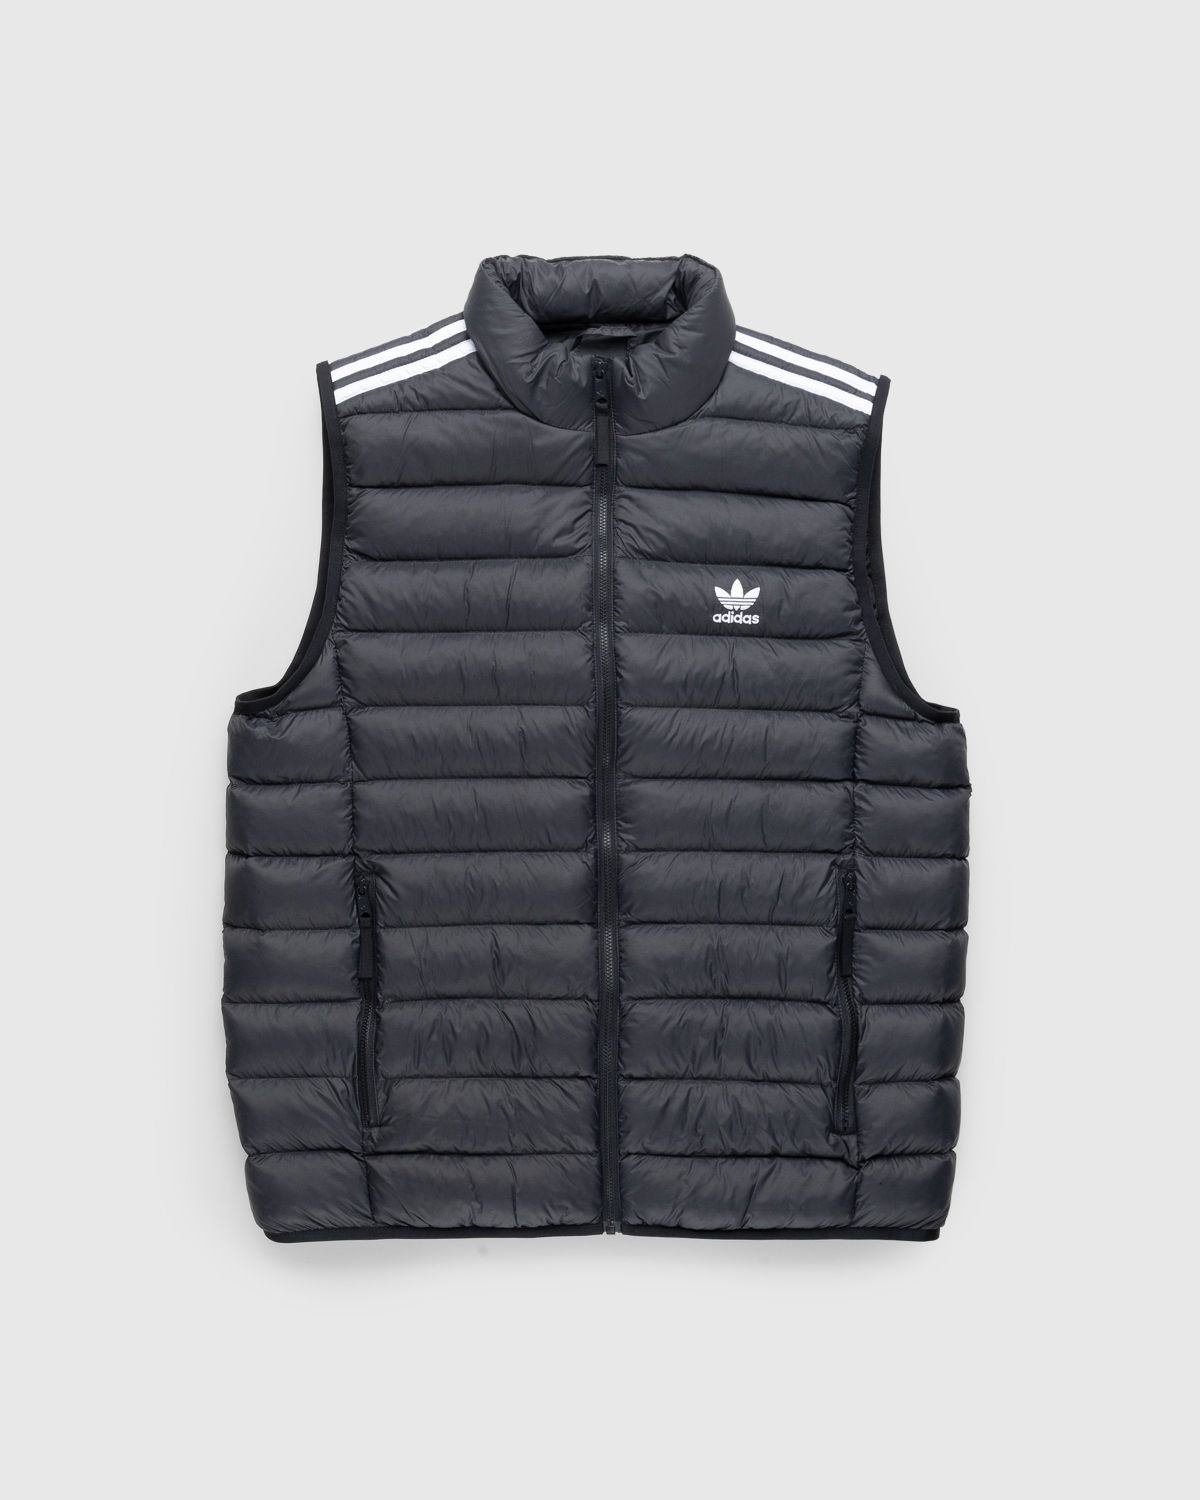 | Adidas Black/White Vest Padded – Highsnobiety Shop